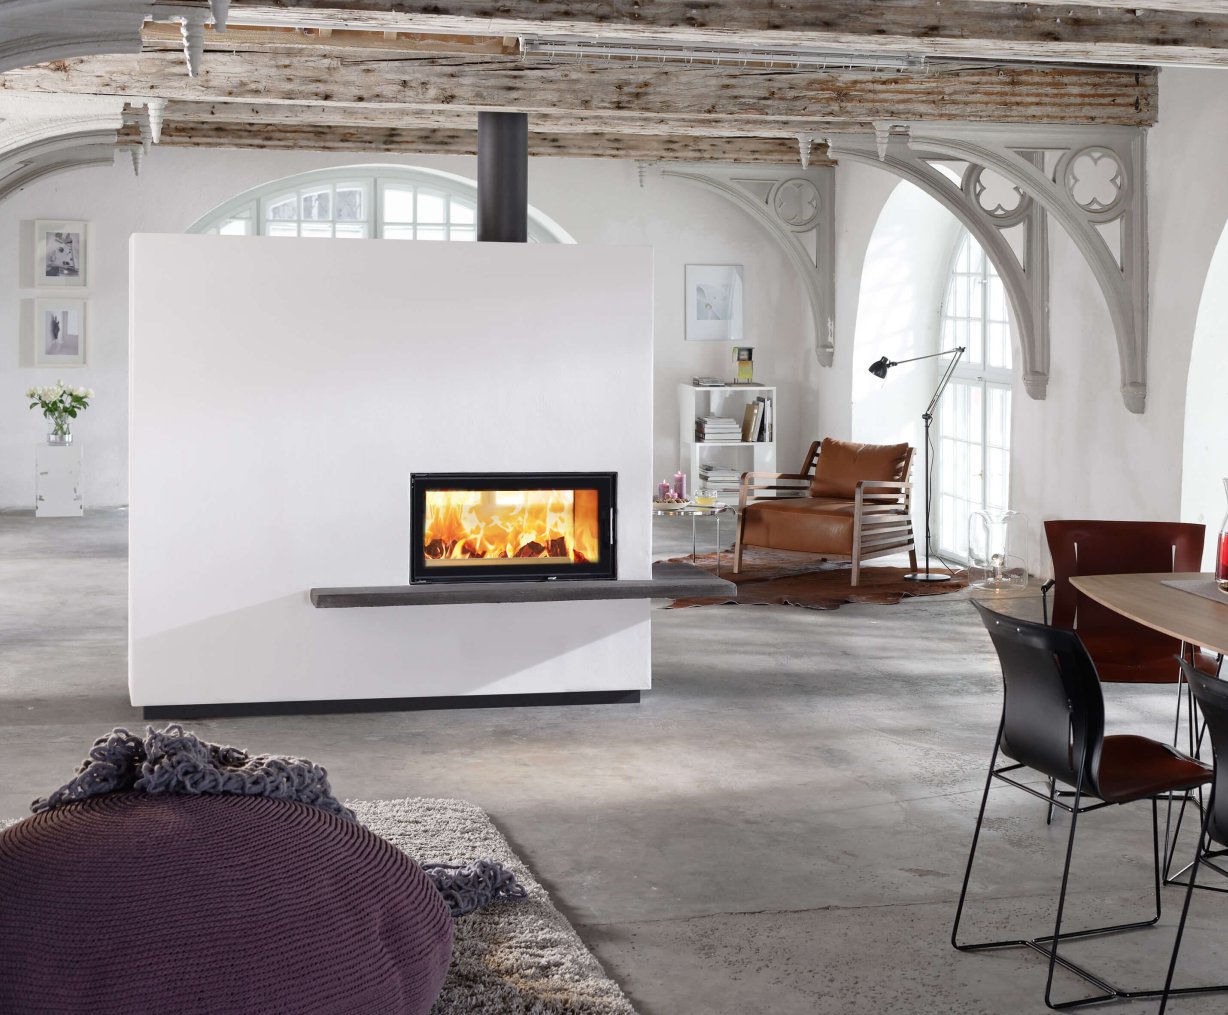 Miu design fireplace with fireplace insert 75x39 K II ambiance photo